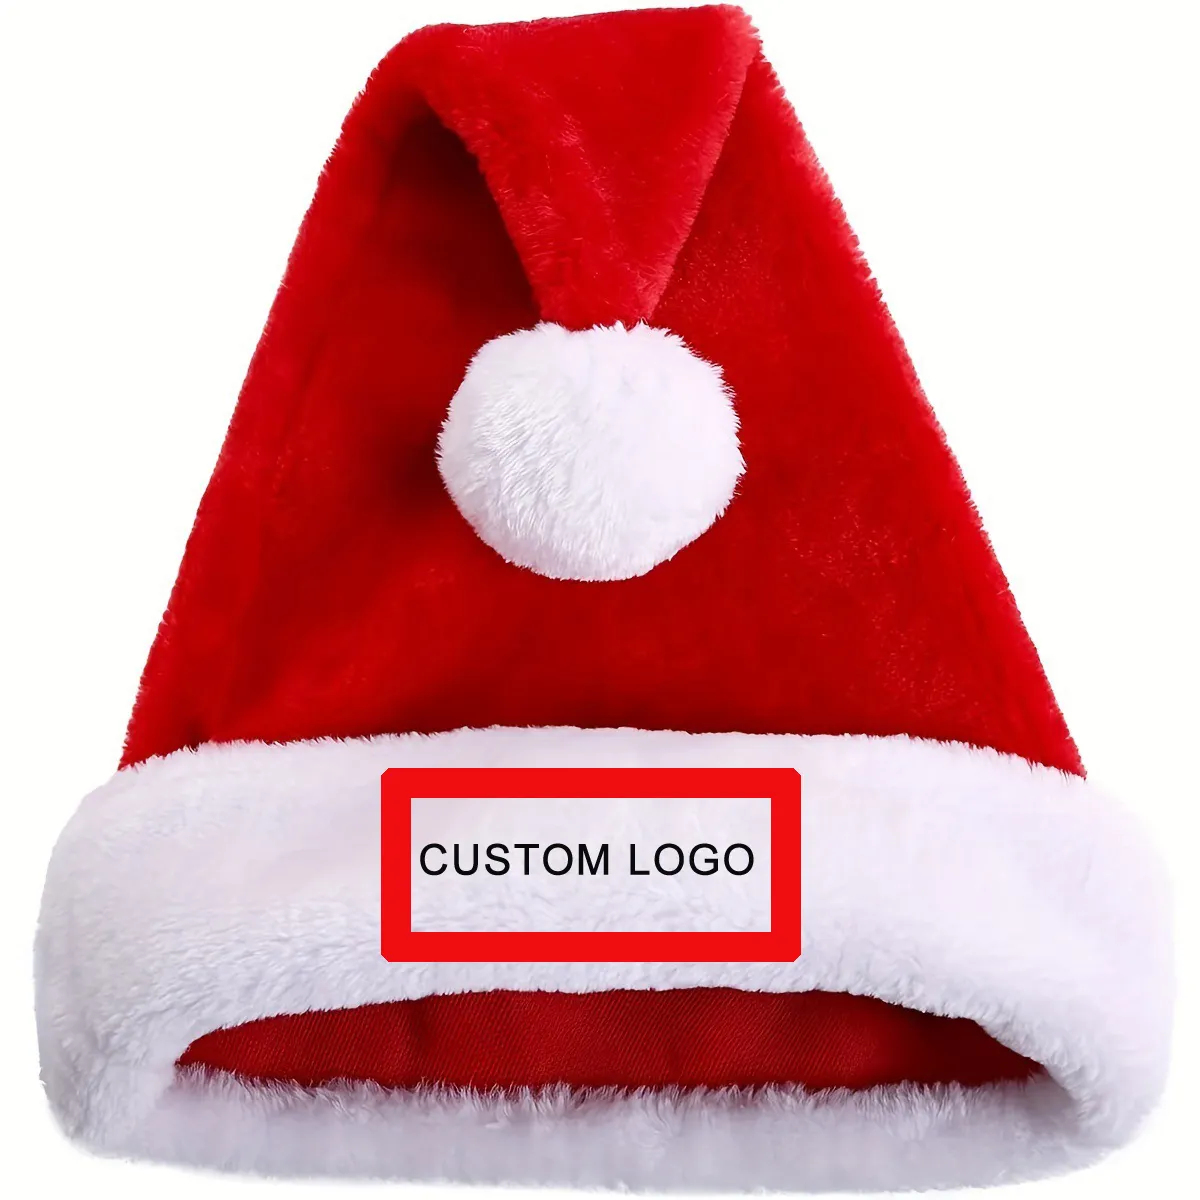 قبعة X'Mas عالية الجودة للجنسين مع رقعة تطريز مخصصة للبيع بالجملة من المصنع OEM ODM قبعة للاحتفال الشعبي وعيد الميلاد قبعة للكبار للحفلات